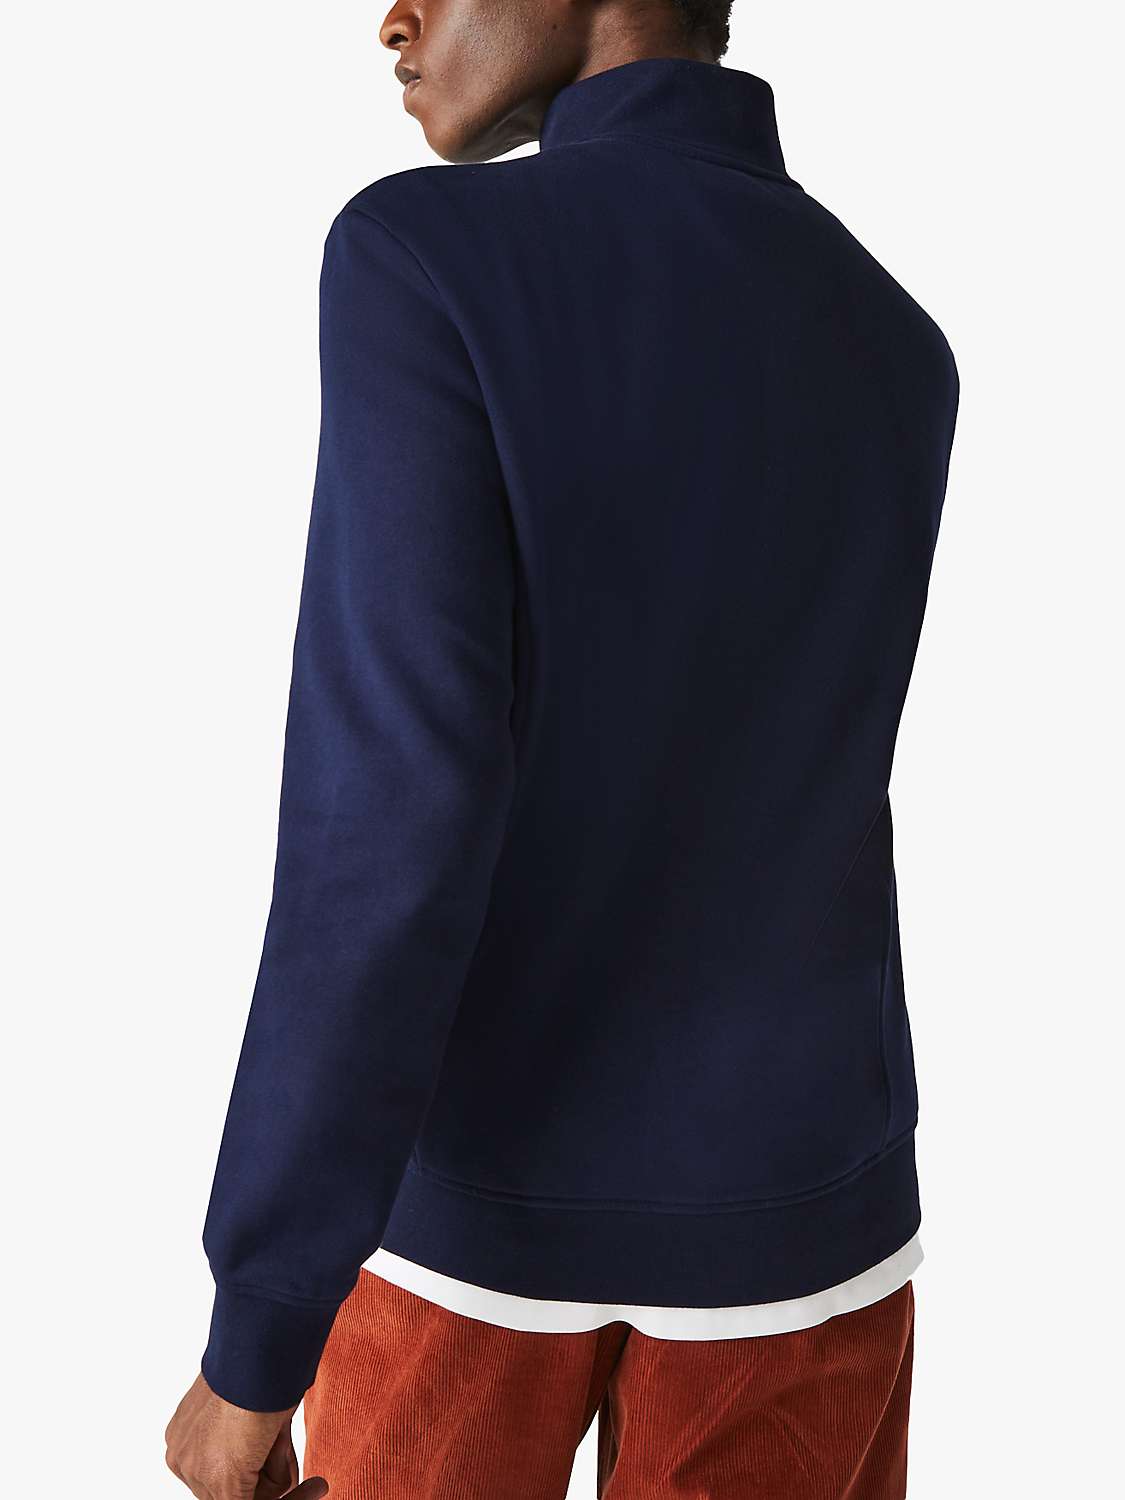 Buy Lacoste SPORT Cotton Blend Fleece Zip Sweatshirt, Navy Online at johnlewis.com